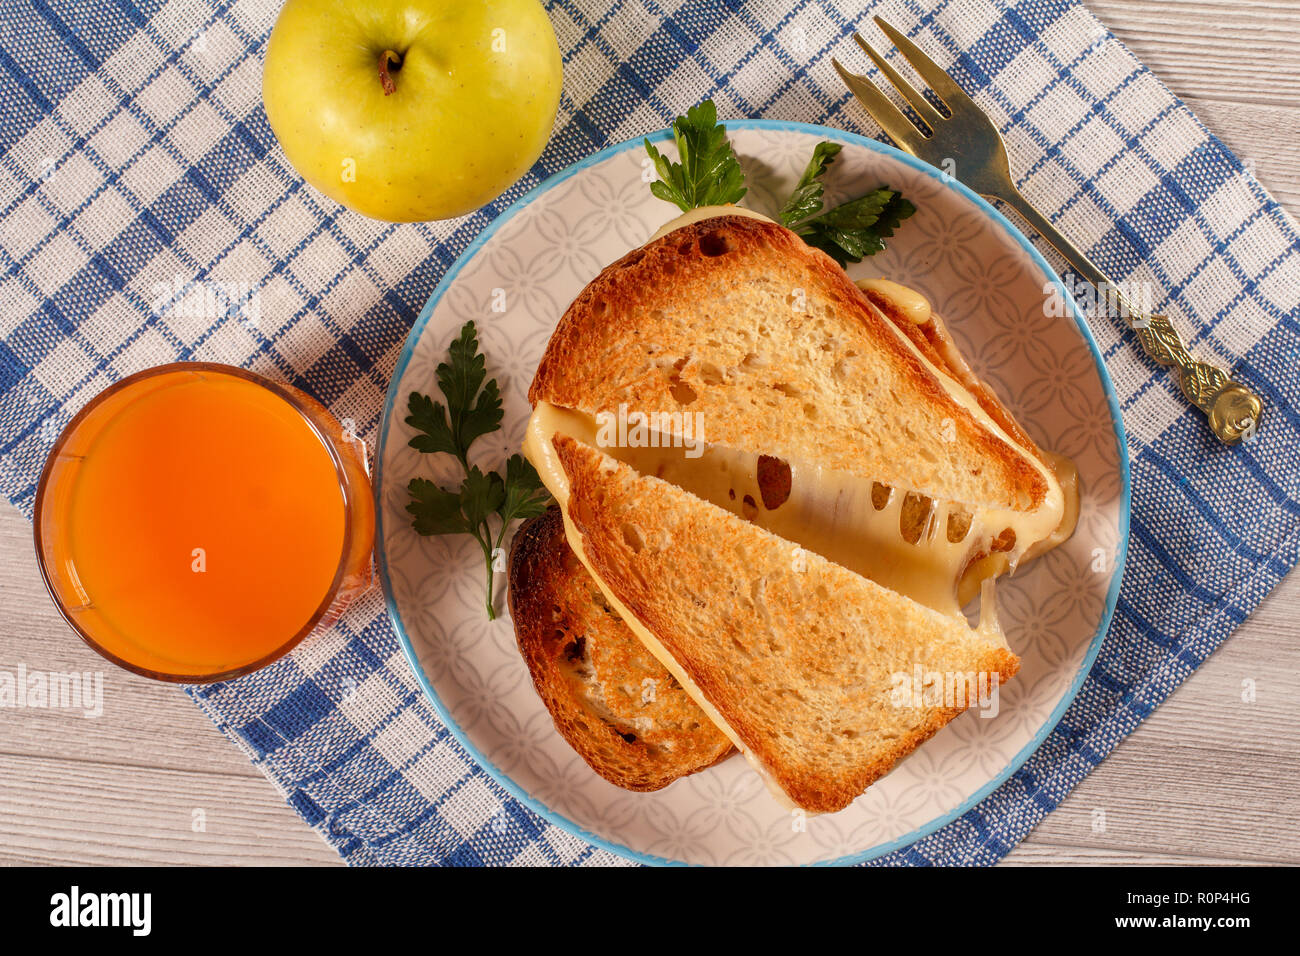 Tranches de pain grillé avec du fromage et persil vert sur plaque blanche, fourchette, verre de jus d'orange et de pomme verte avec une serviette de cuisine bleu. La bonne nourriture Banque D'Images